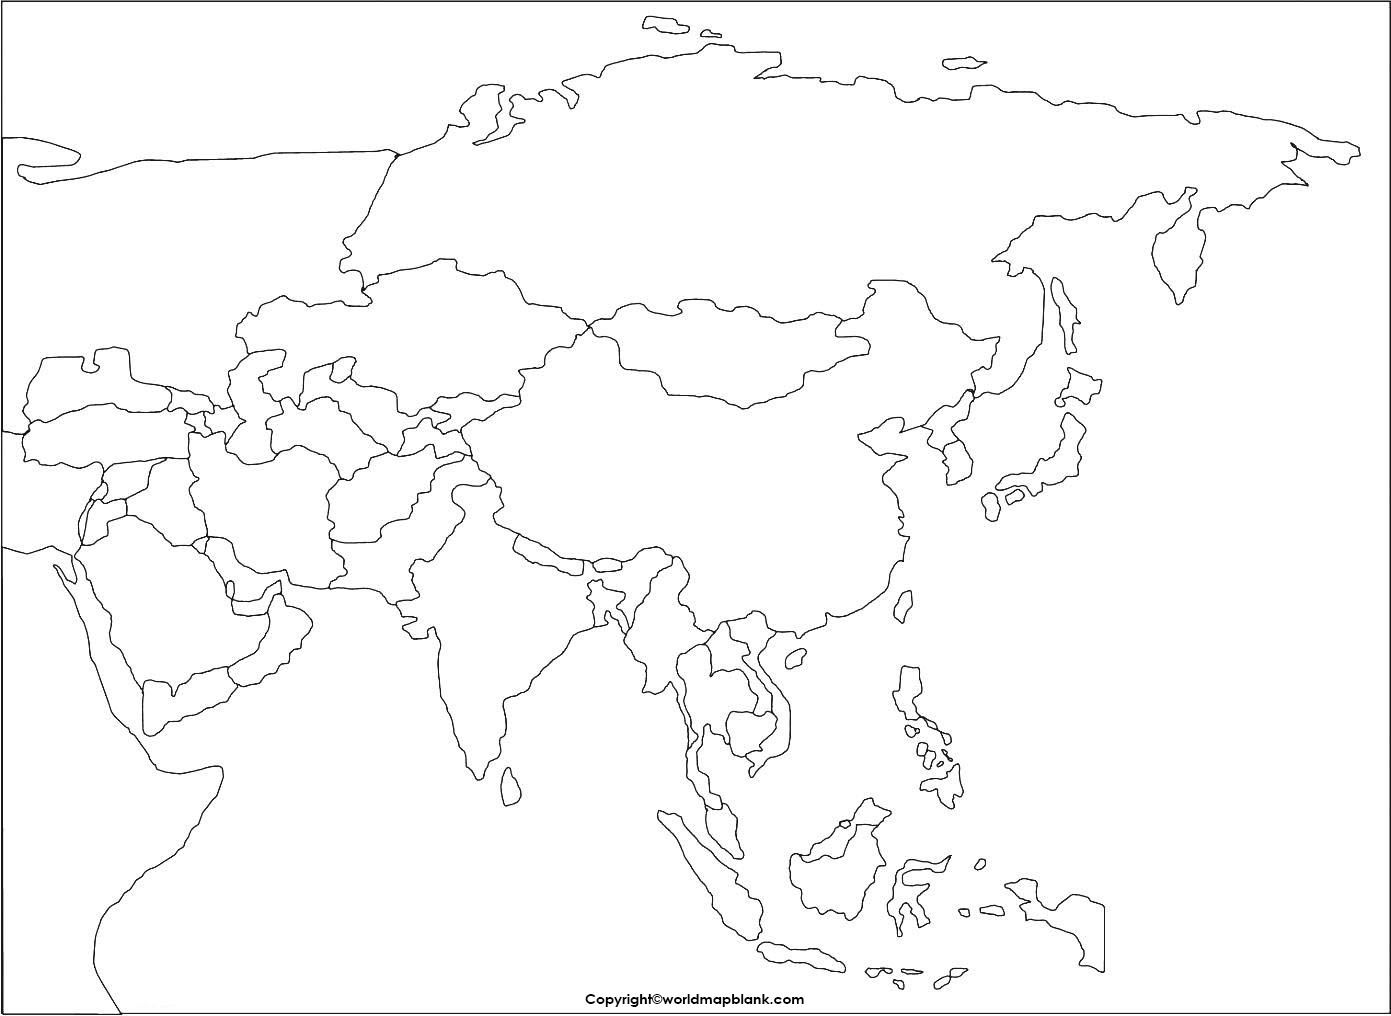 Karte von Asien ohne Beschriftung